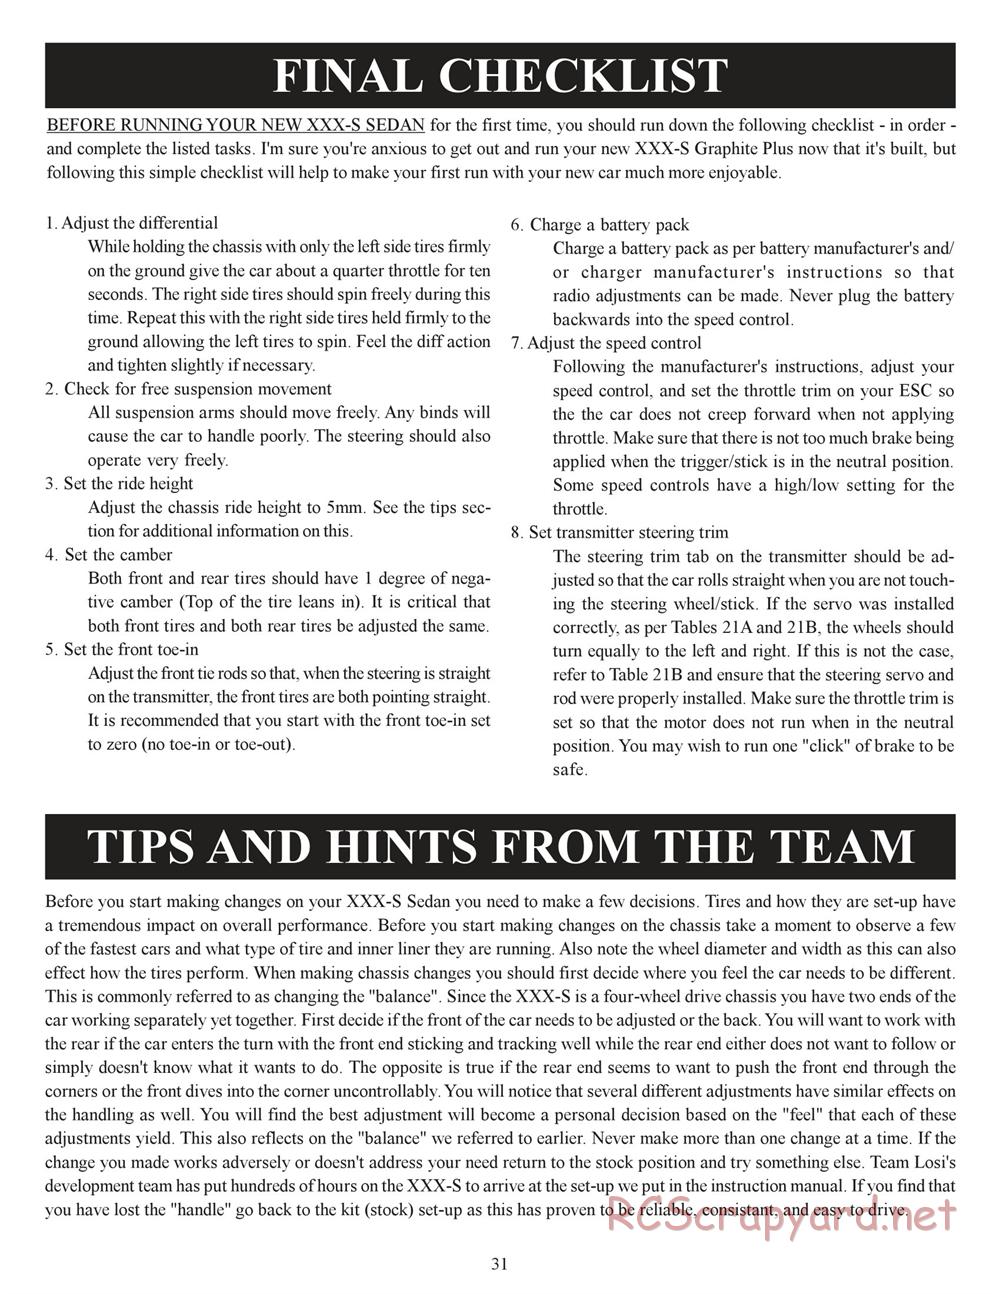 Team Losi - XXX-S Graphite Plus - Manual - Page 34